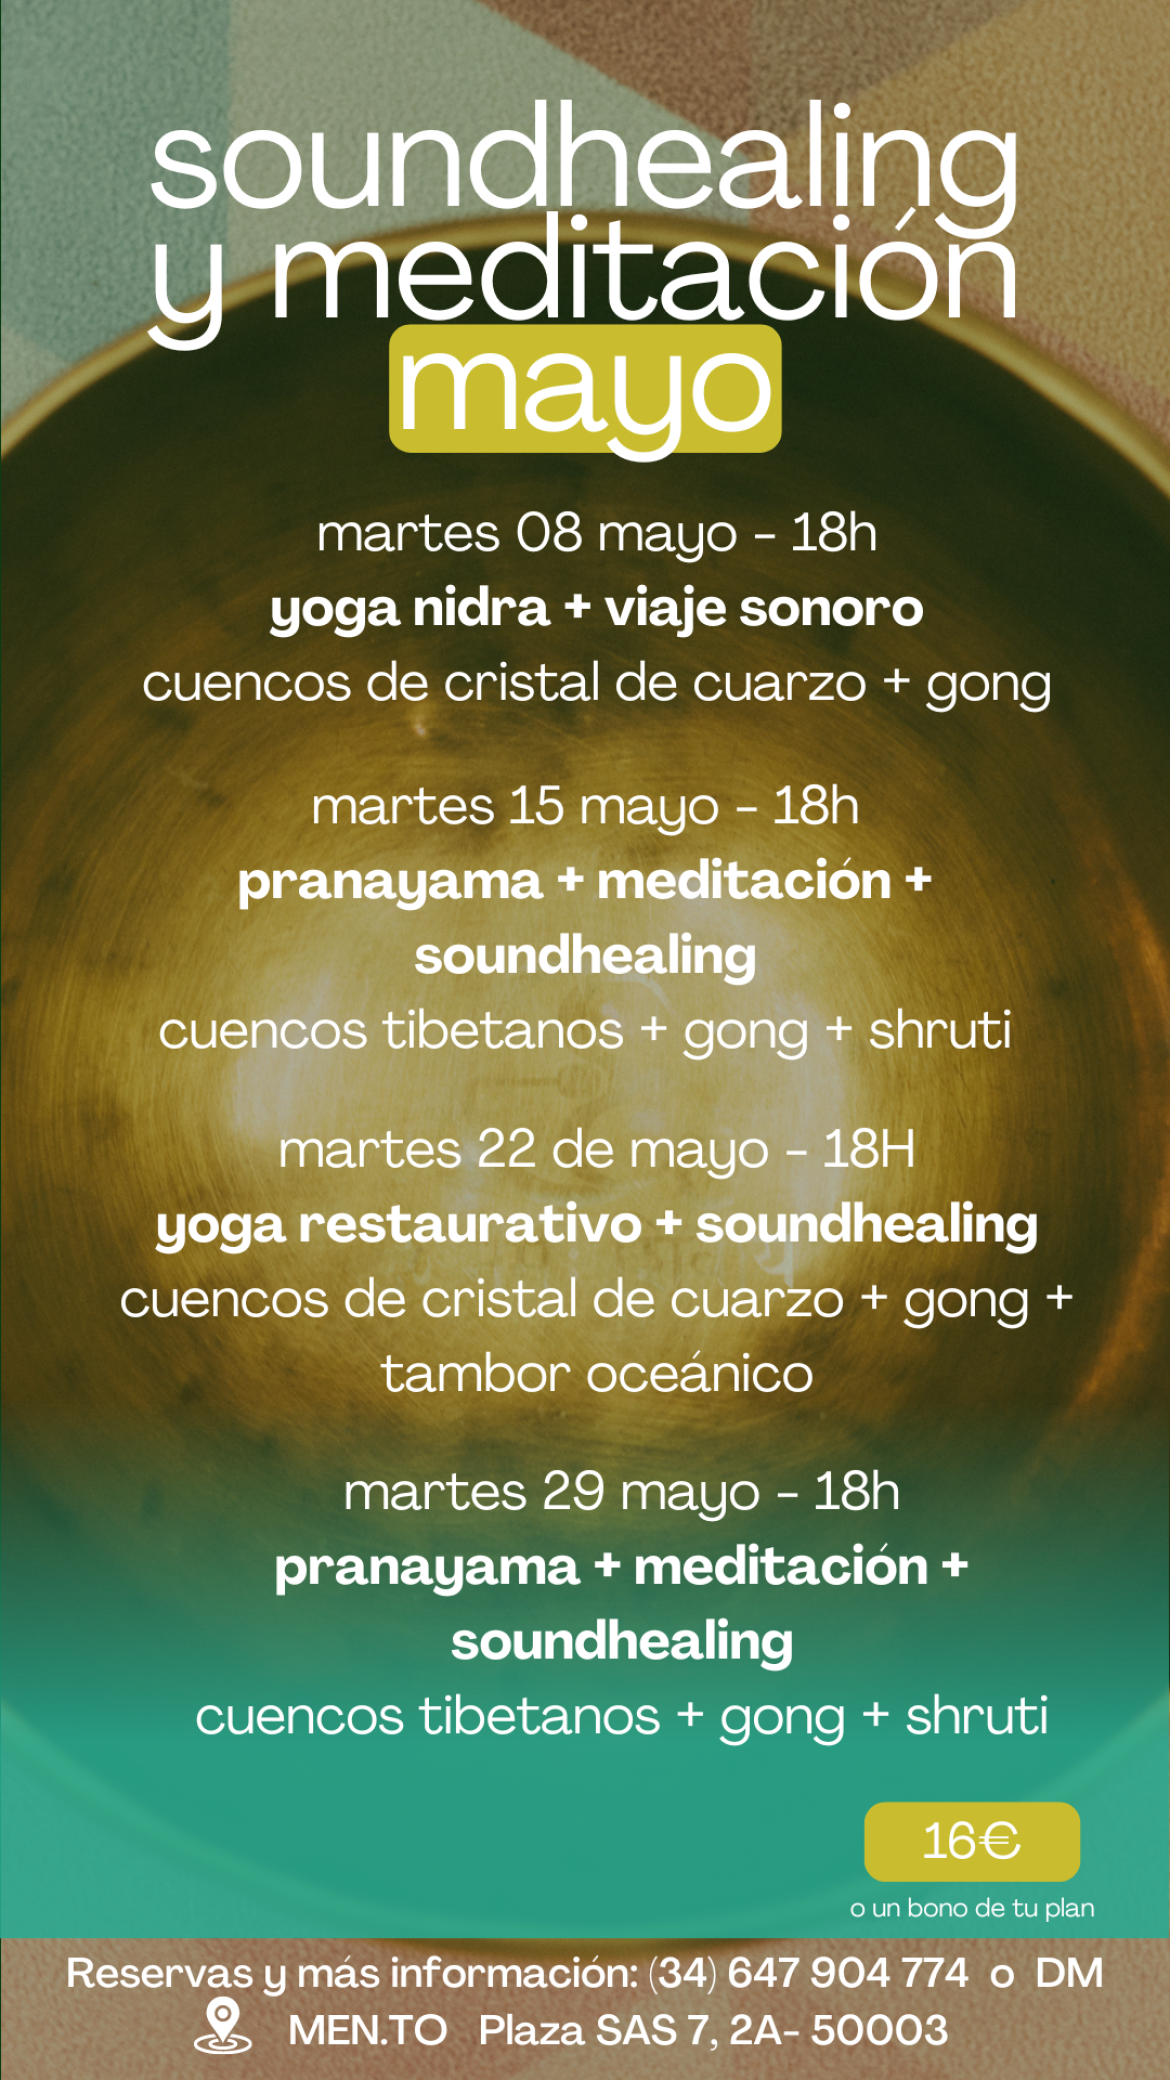 Soundhealing y meditación